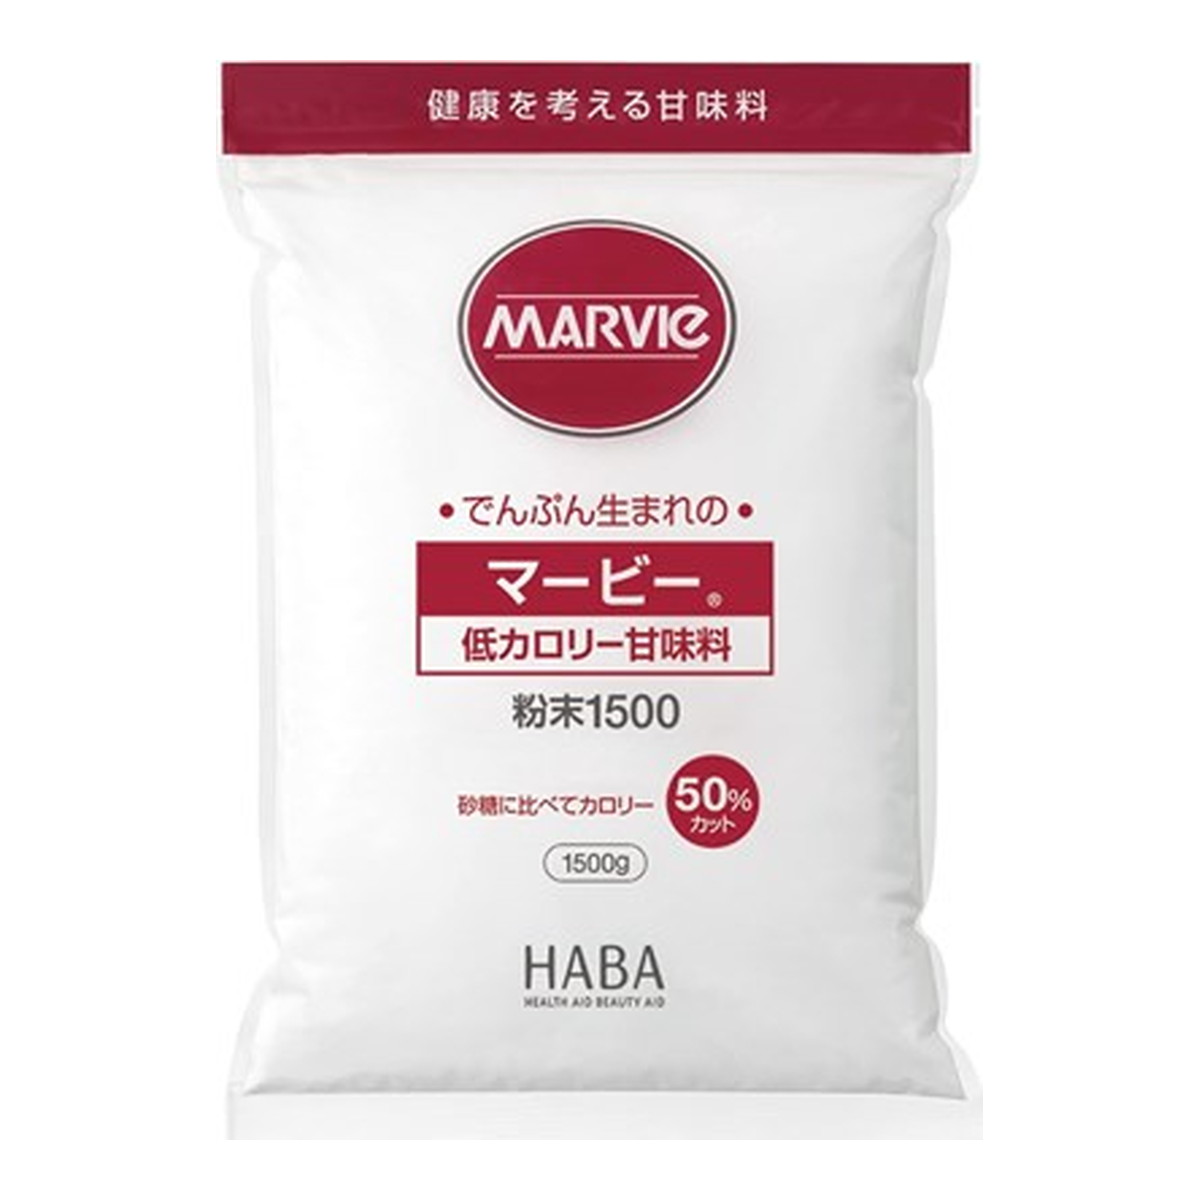 【送料込・まとめ買い×4個セット】ハーバー研究所 HABA マービー 低カロリー 甘味料 粉末 1500g